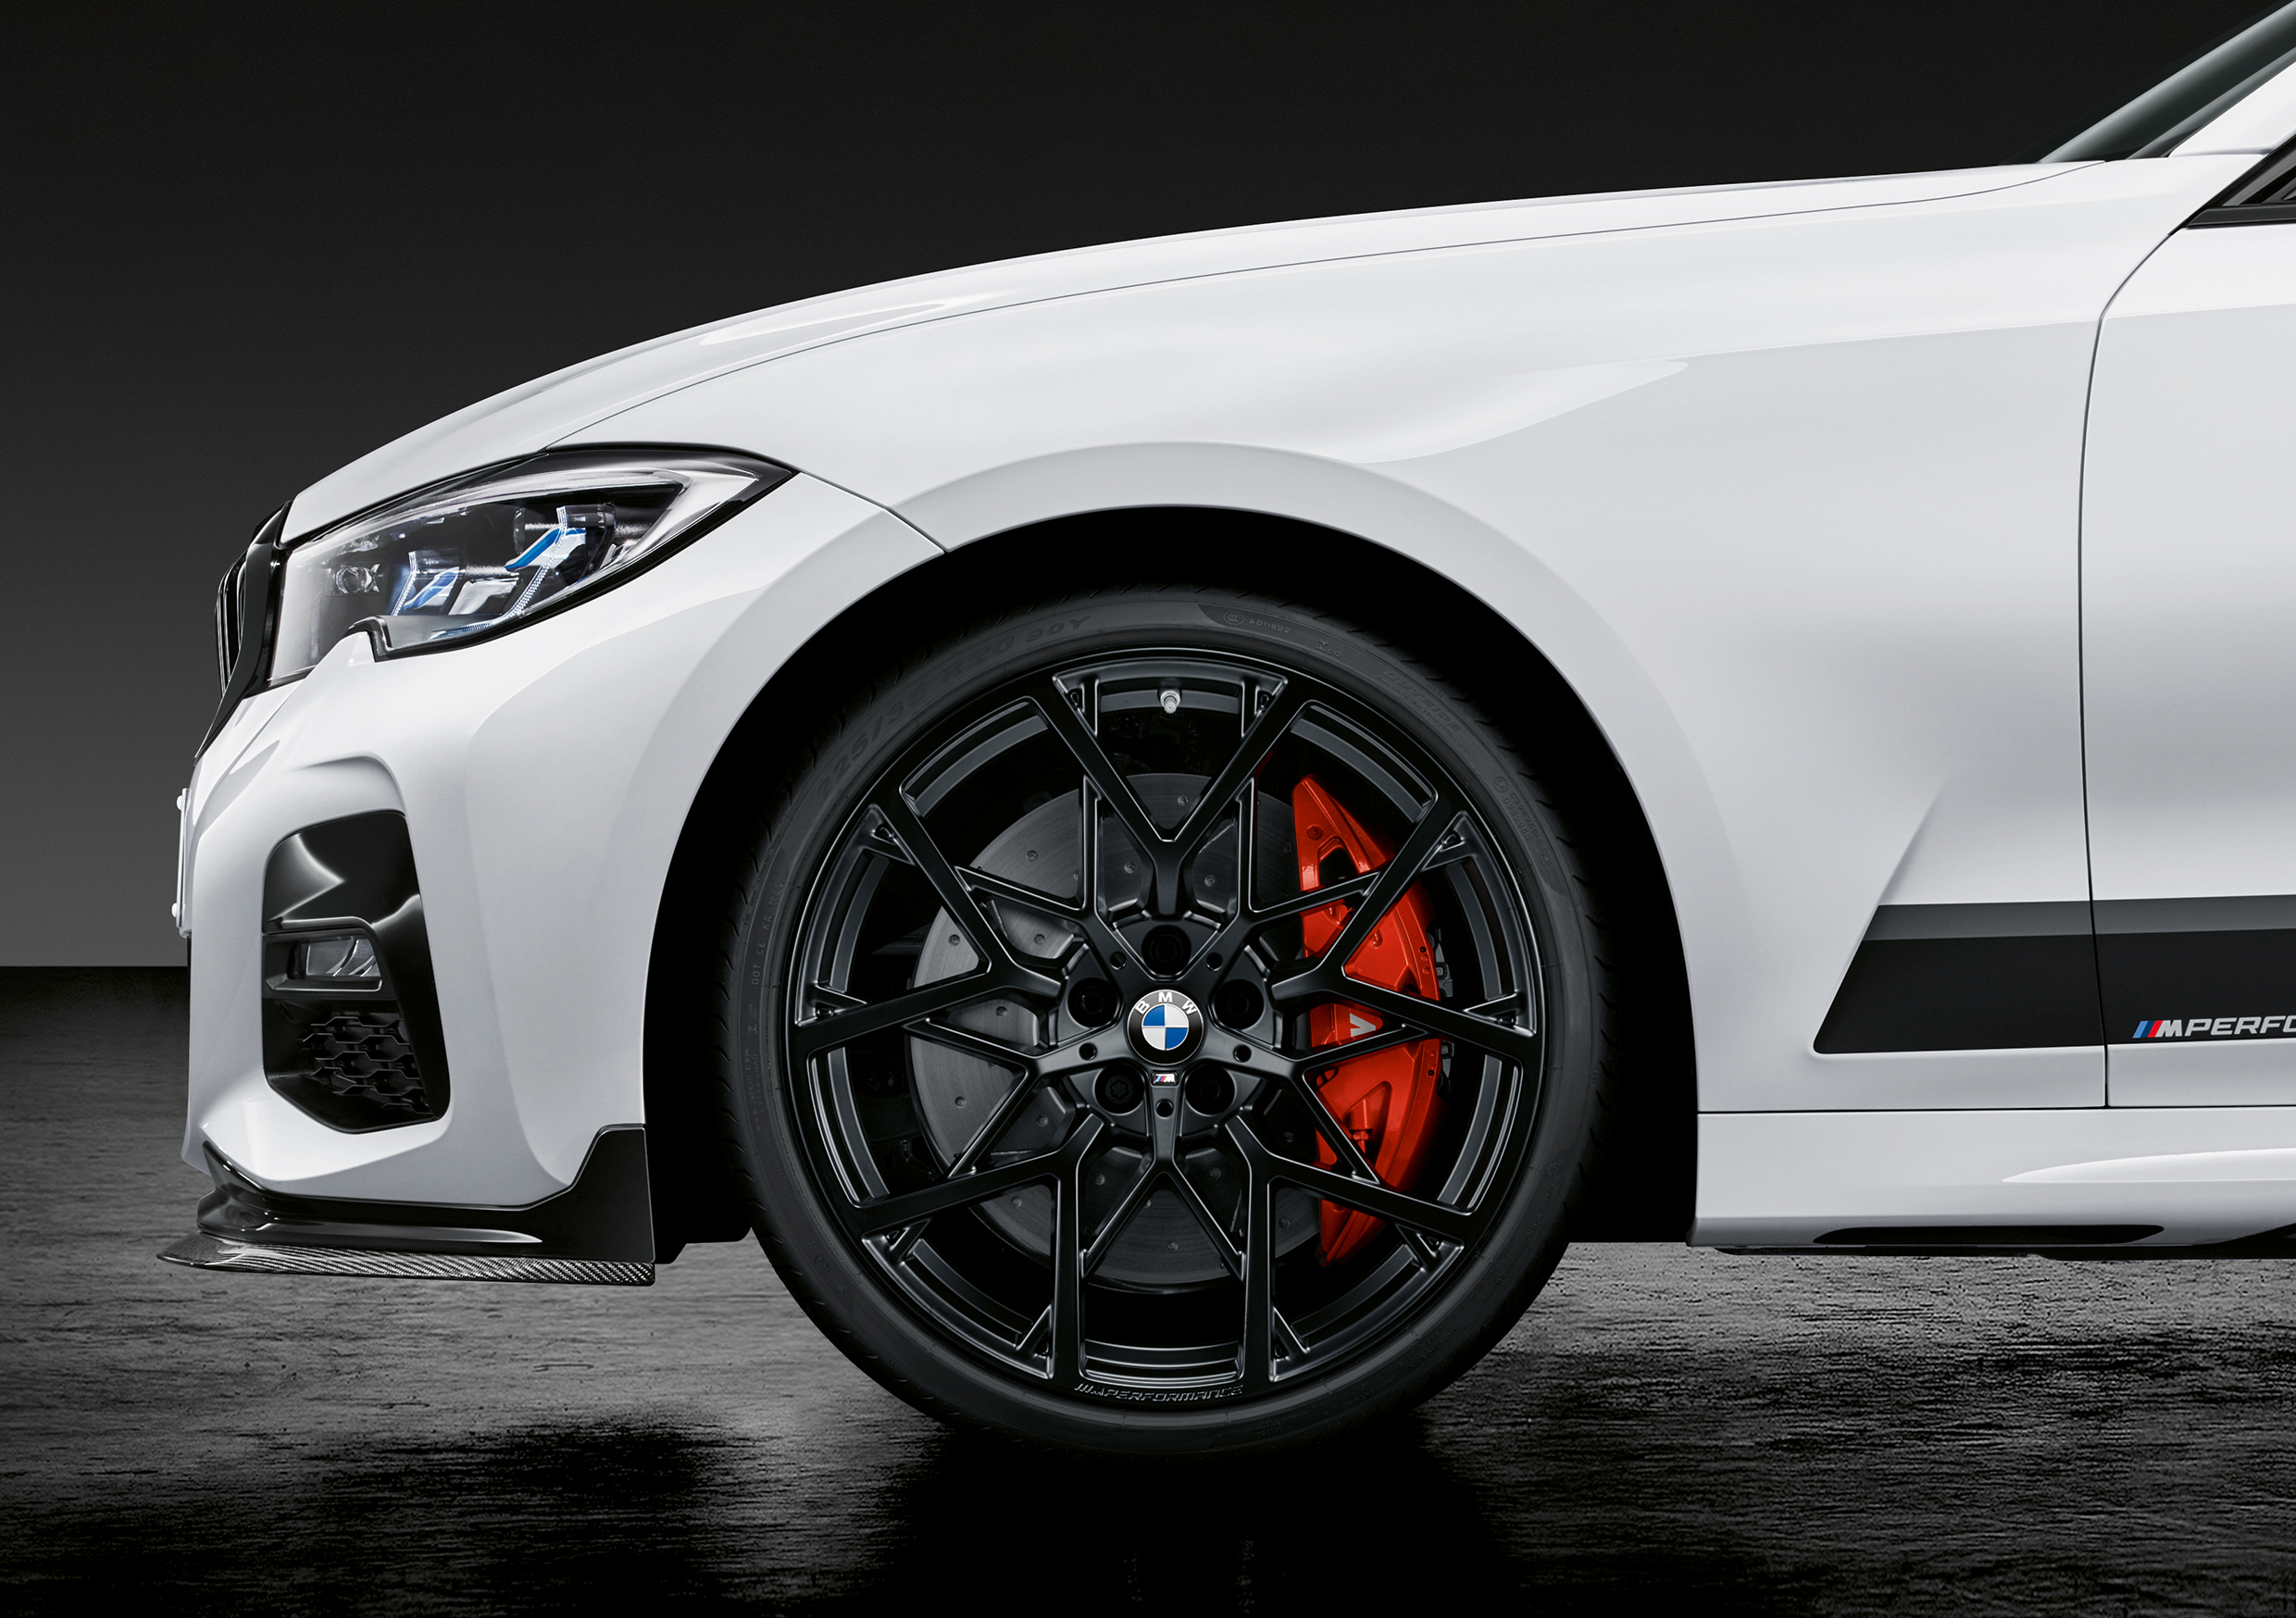 BMW M Performance Nachrüstsatz Sportfahrwerk 4 Zylinder für 3er